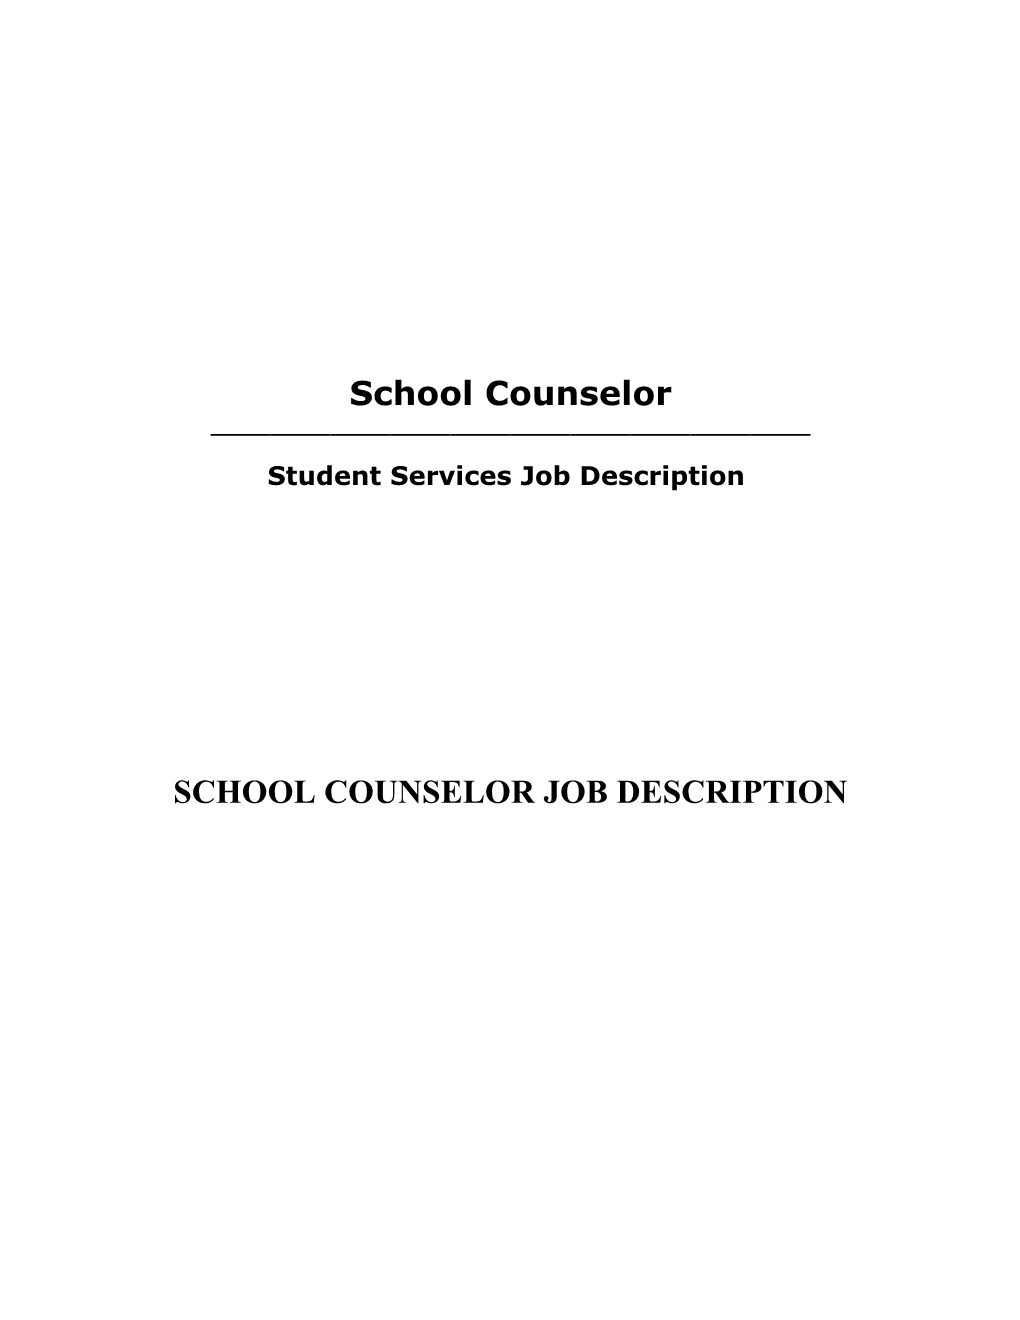 Student Services Job Description